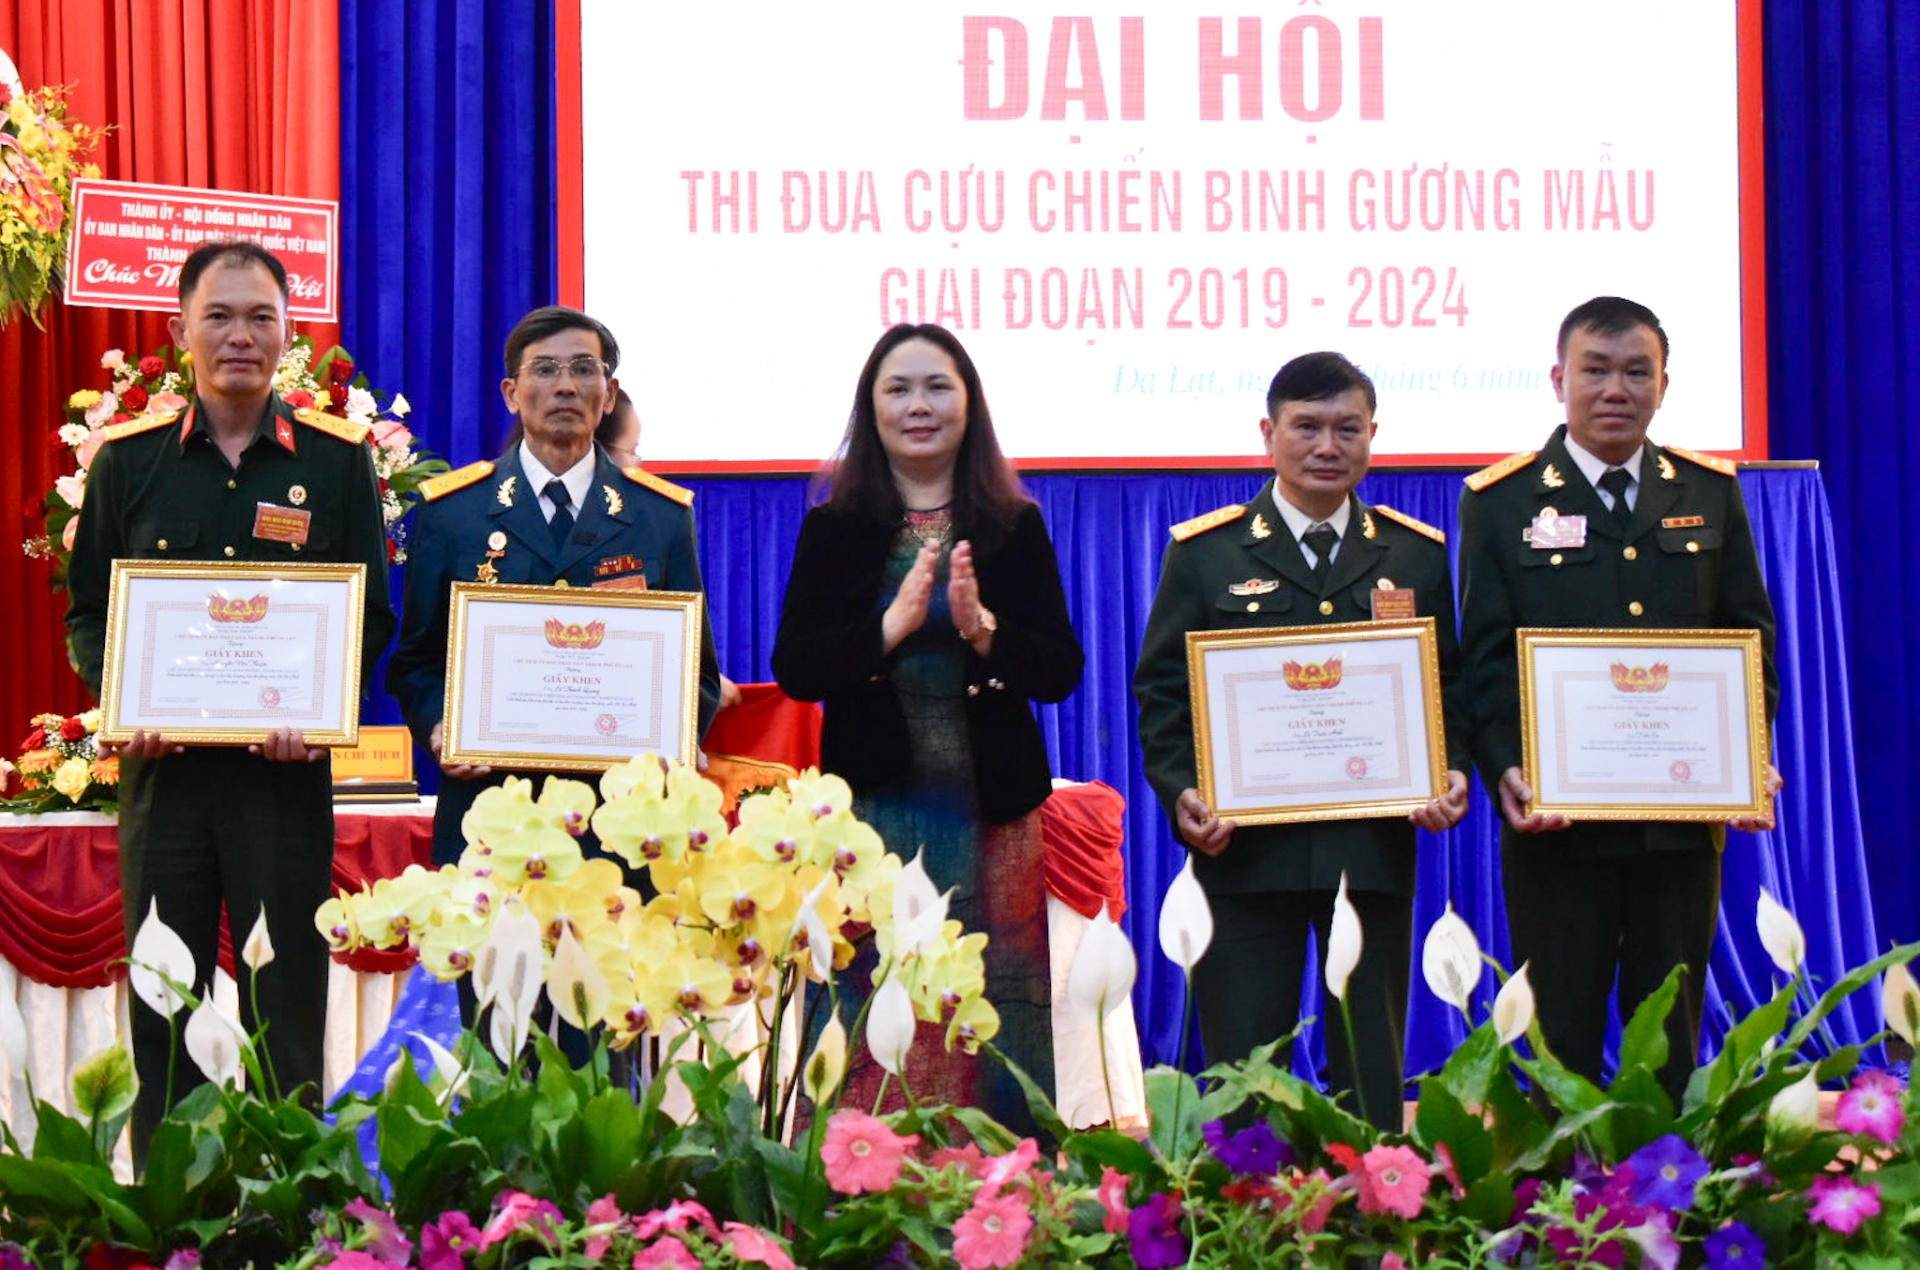  UBND TP Đà Lạt khen thưởng các cá nhân điển hình trong học tập và làm theo tư tưởng, đạo đức phong cách Hồ Chí Minh